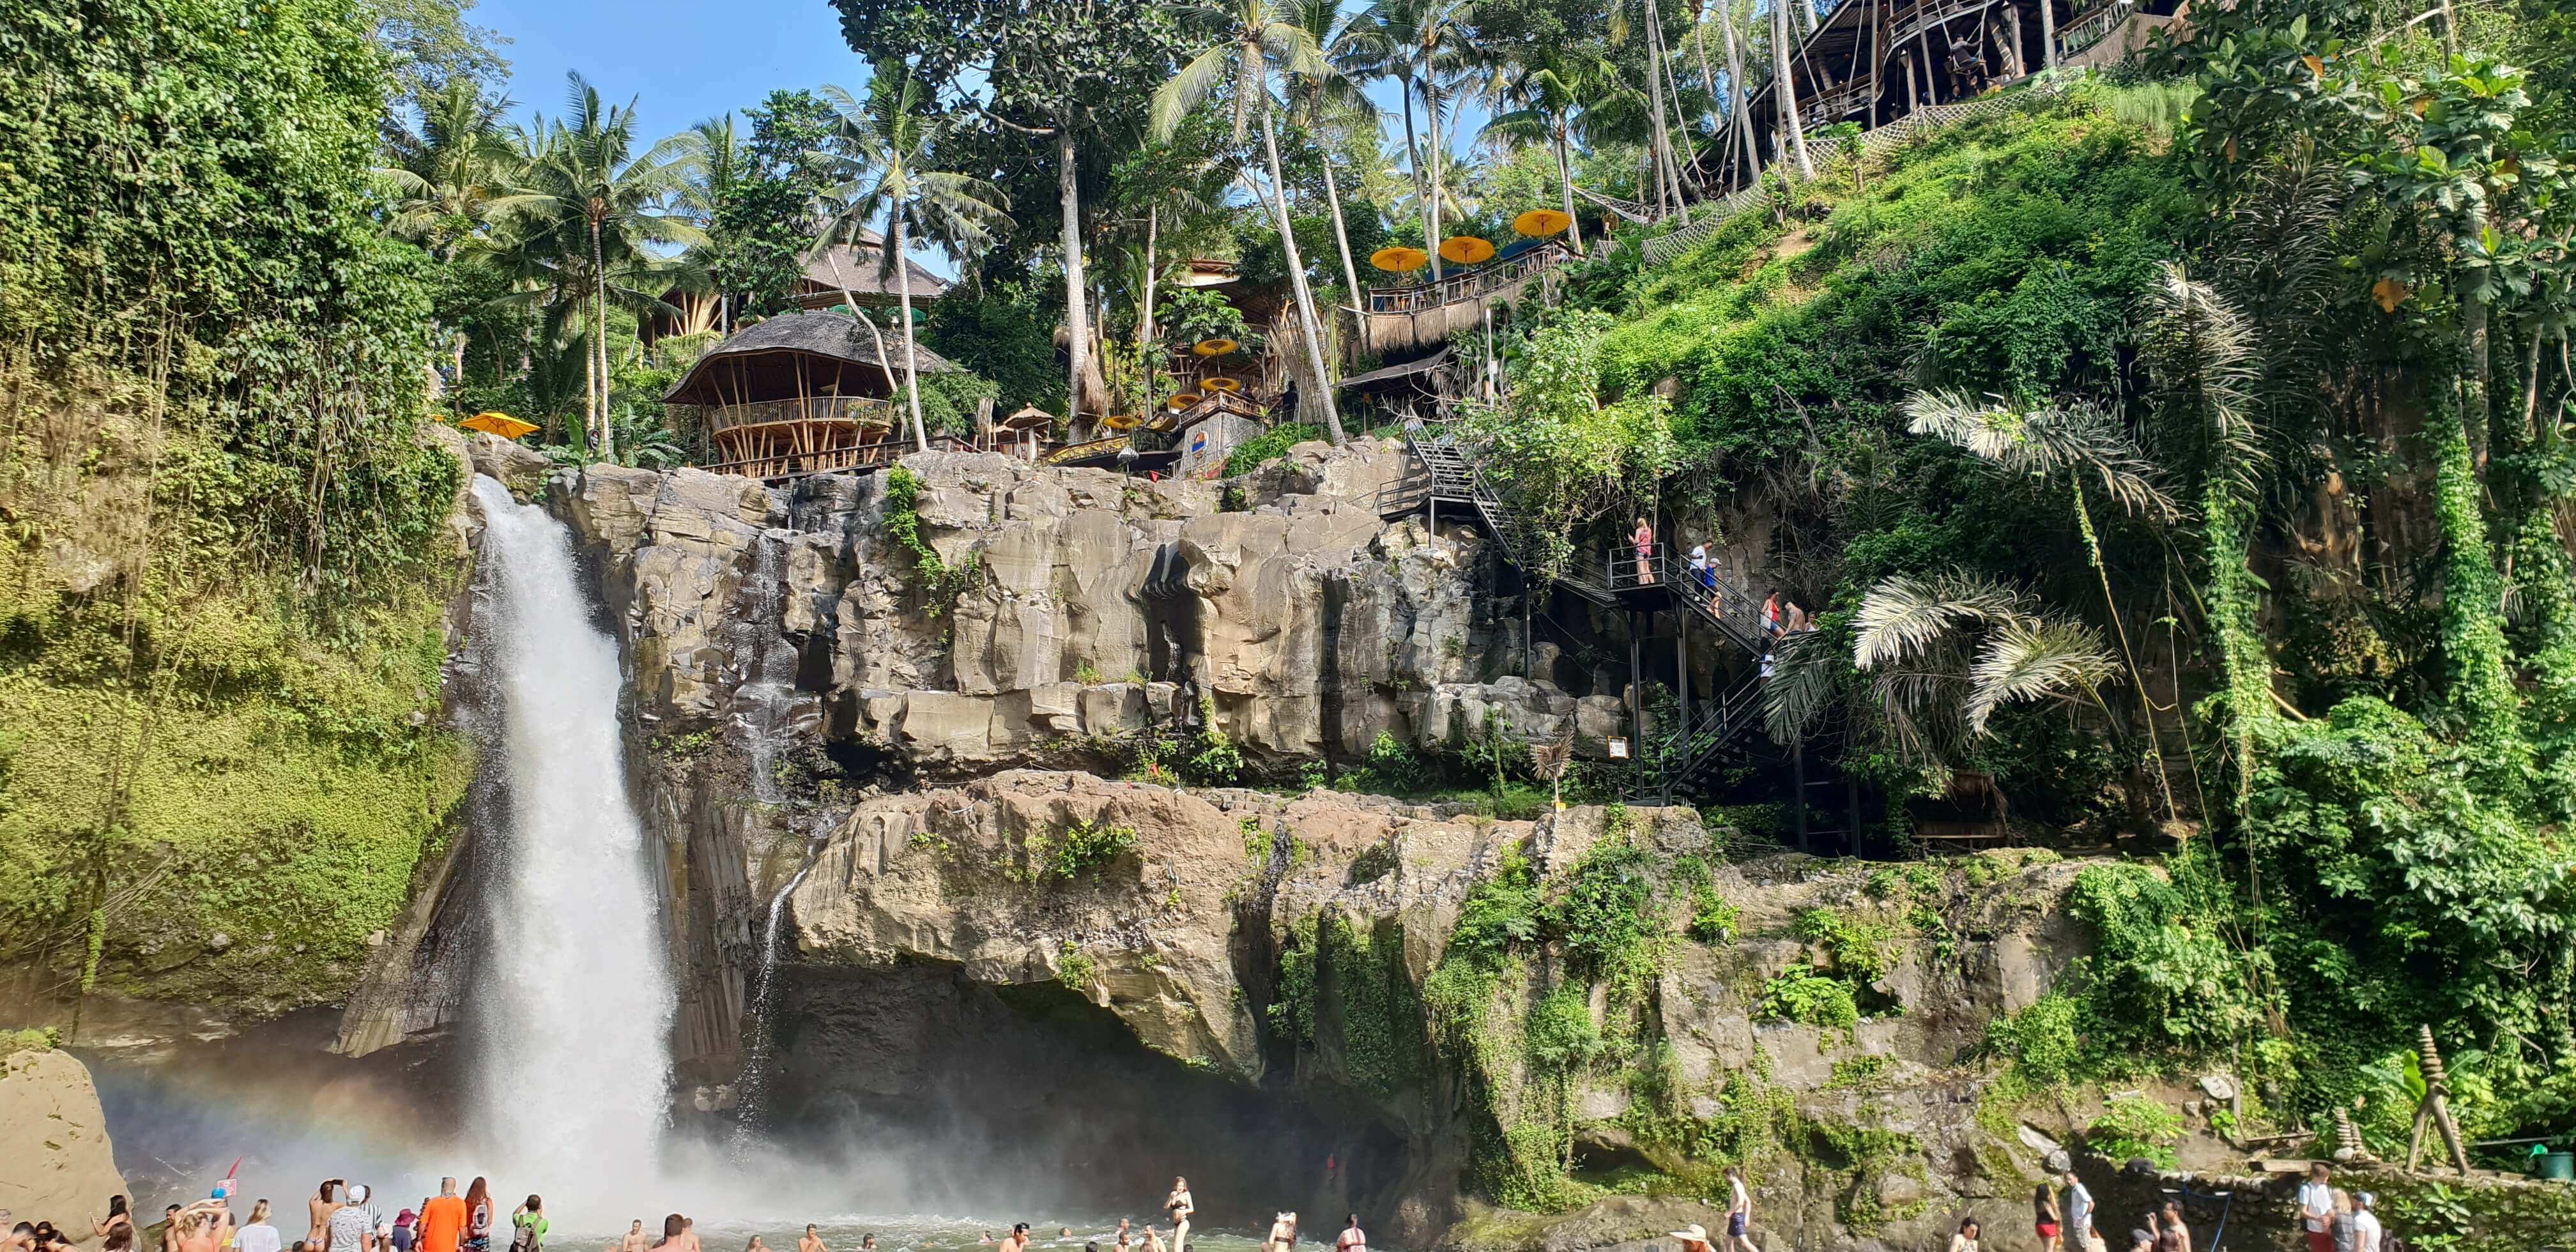 Tegenungan waterfall is a major attraction in Ubud, Bali